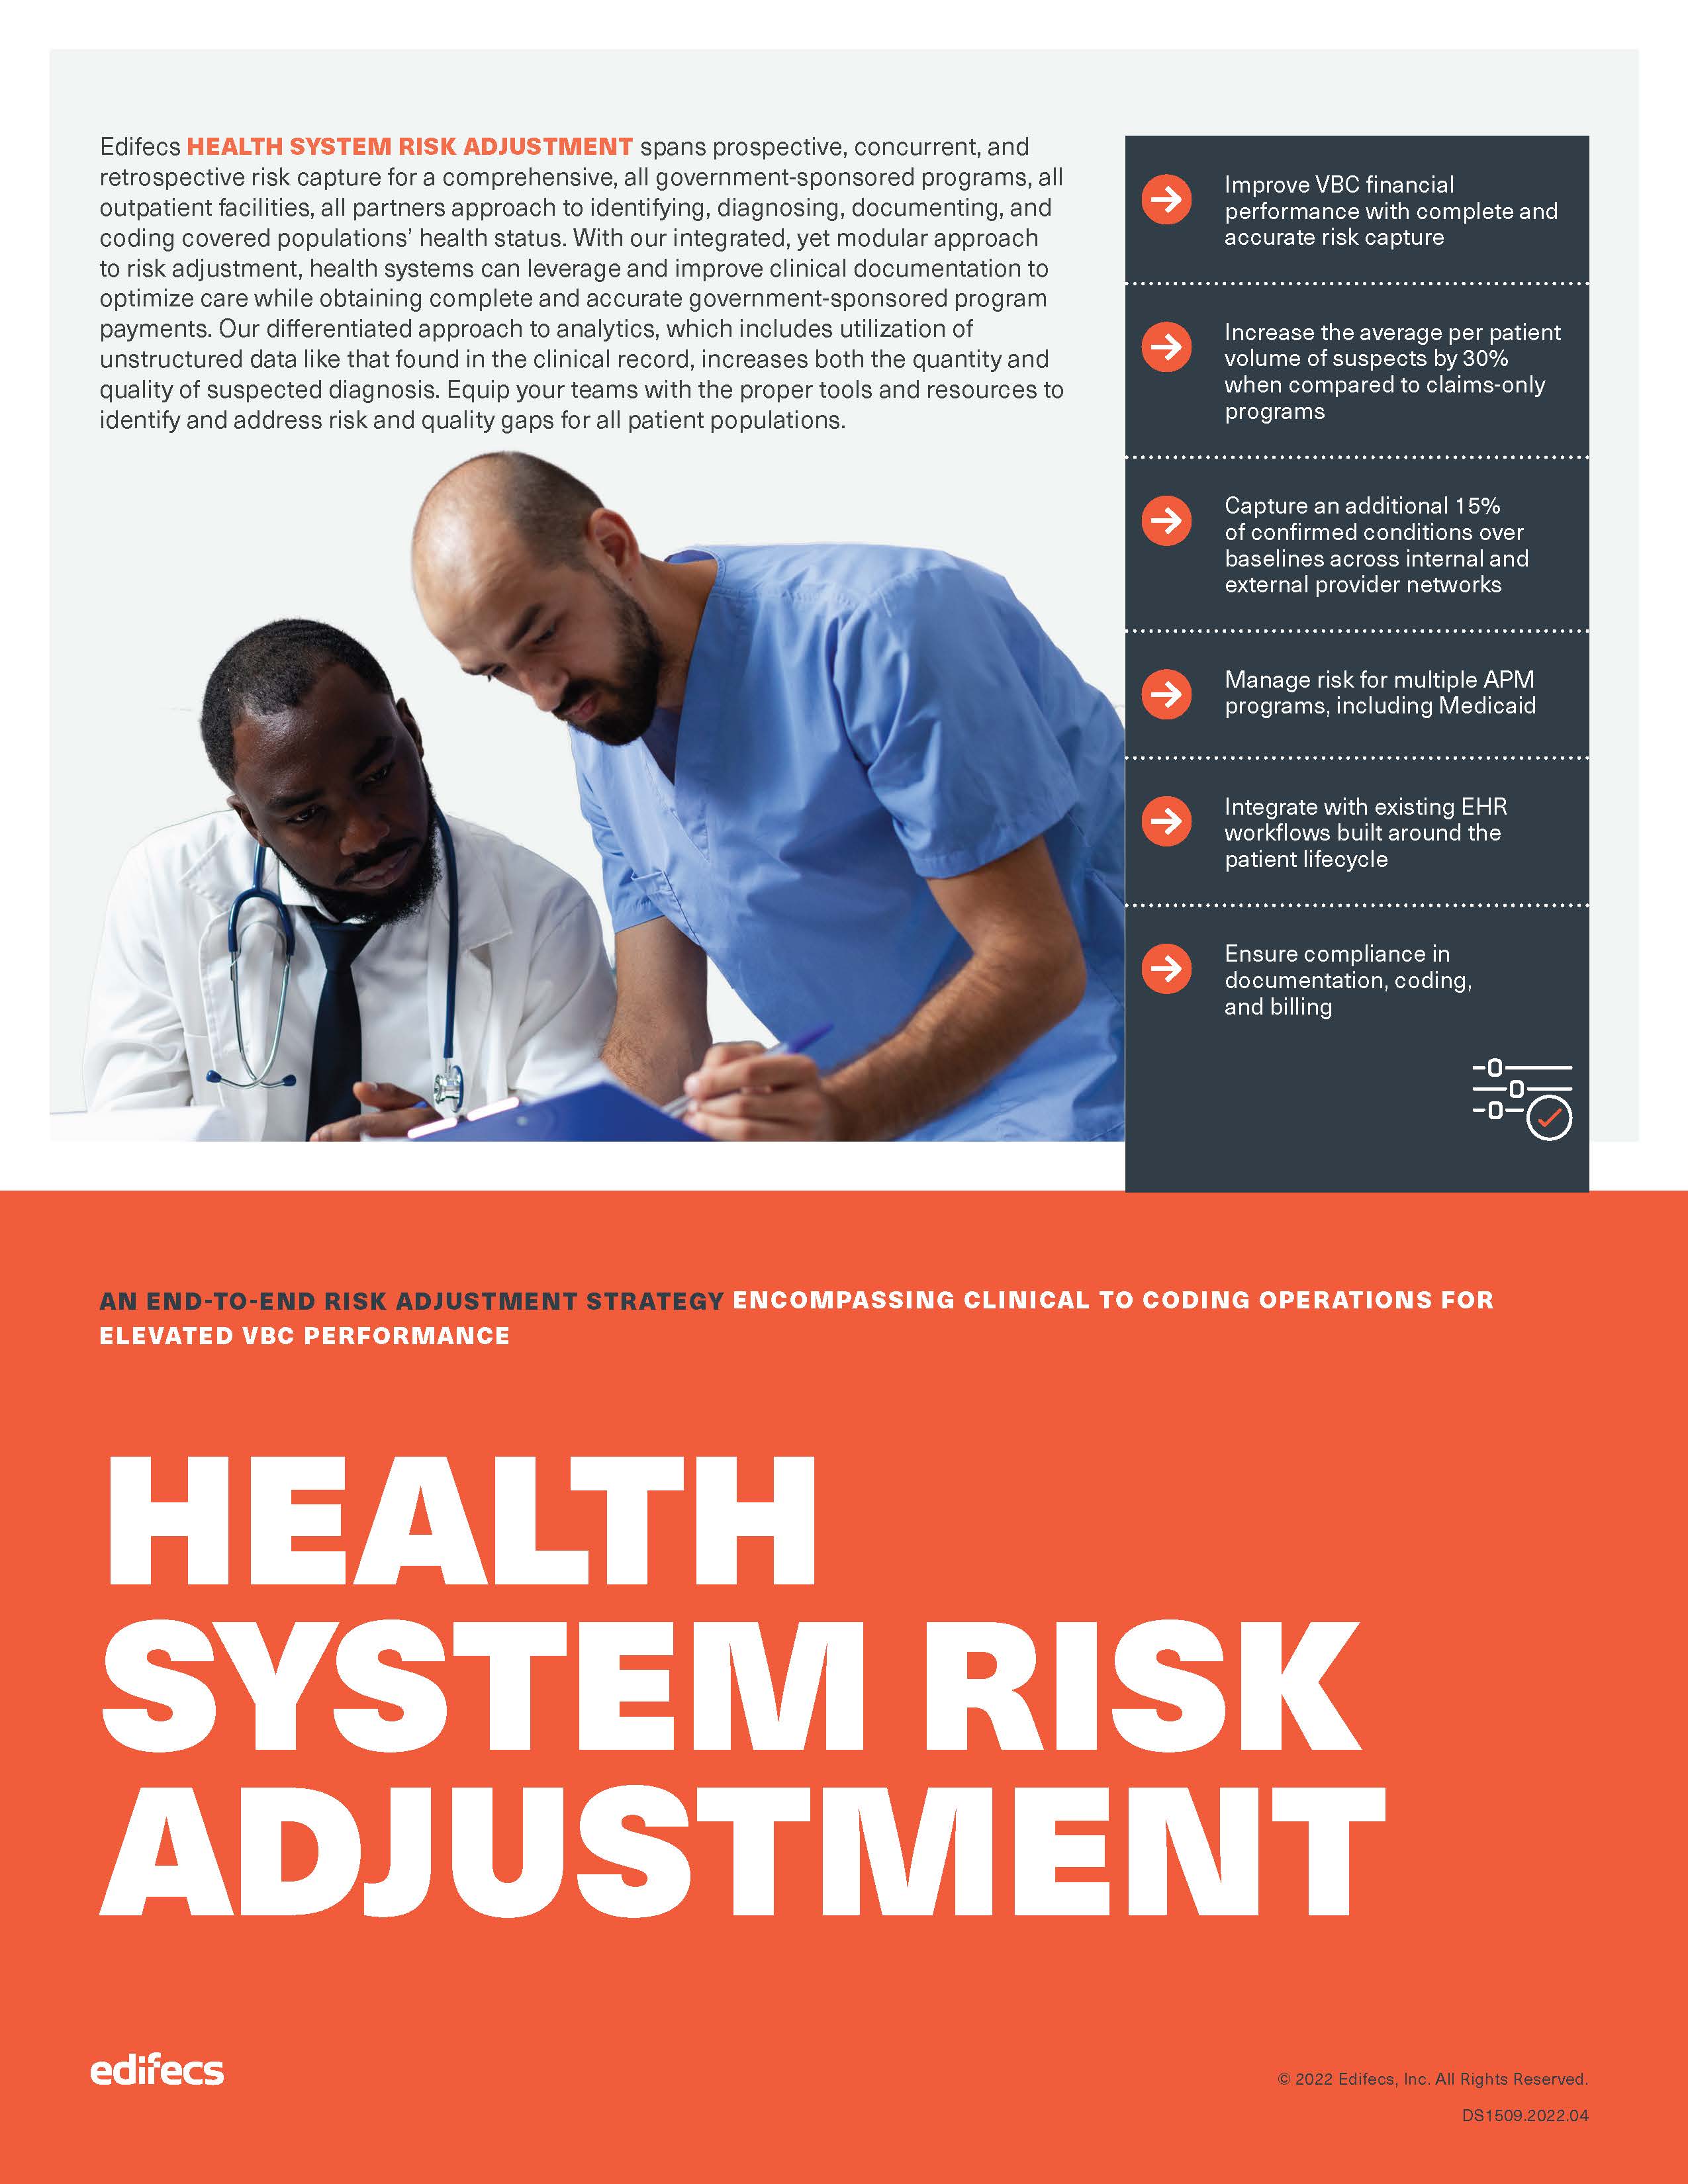 Health System Risk Adjustment Data Sheet